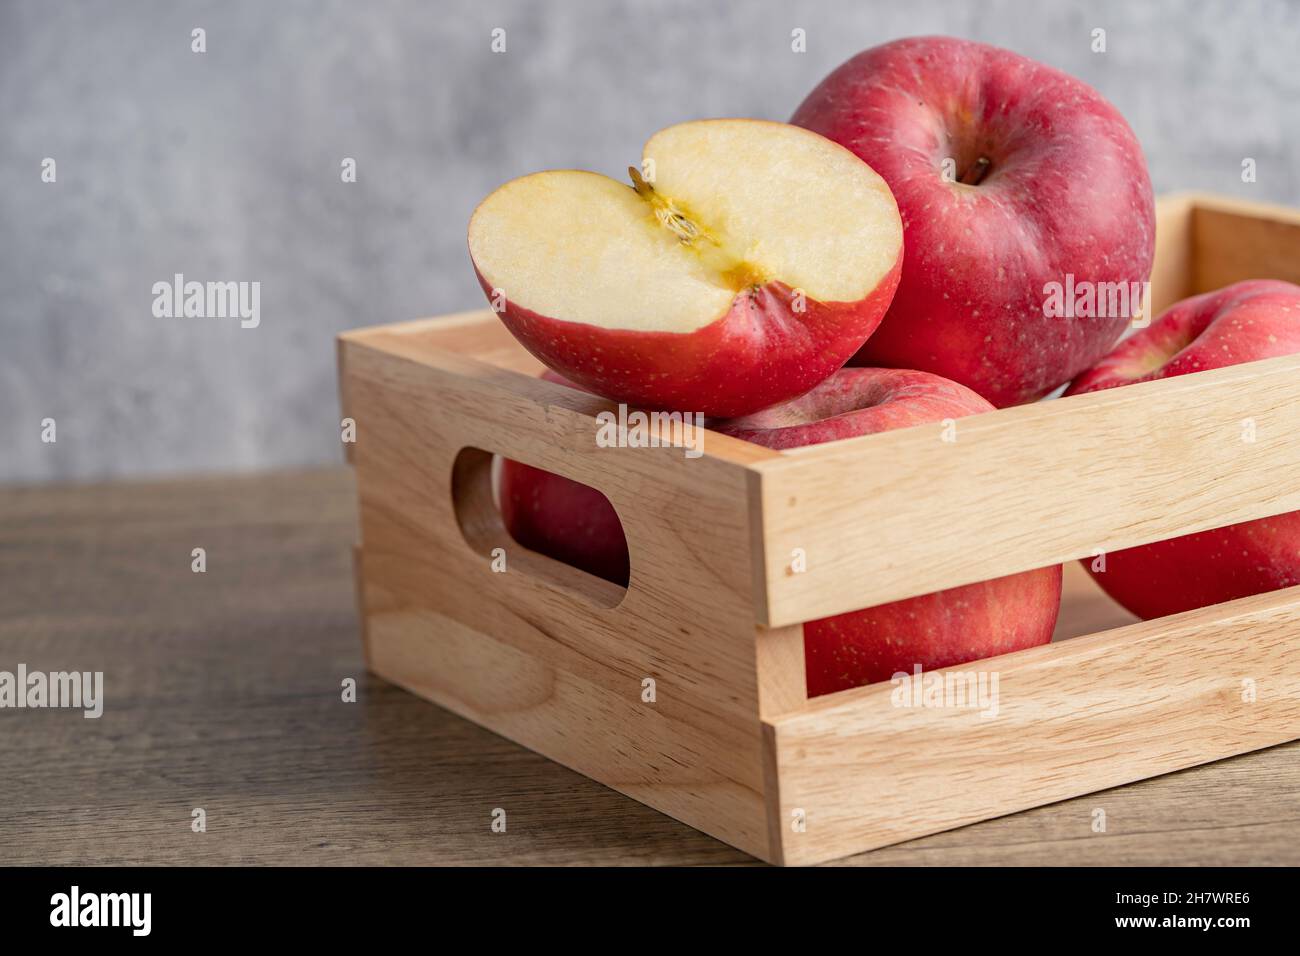 Apfel und halb Obst in Holzkiste mit Kopierraum Stockfotografie - Alamy